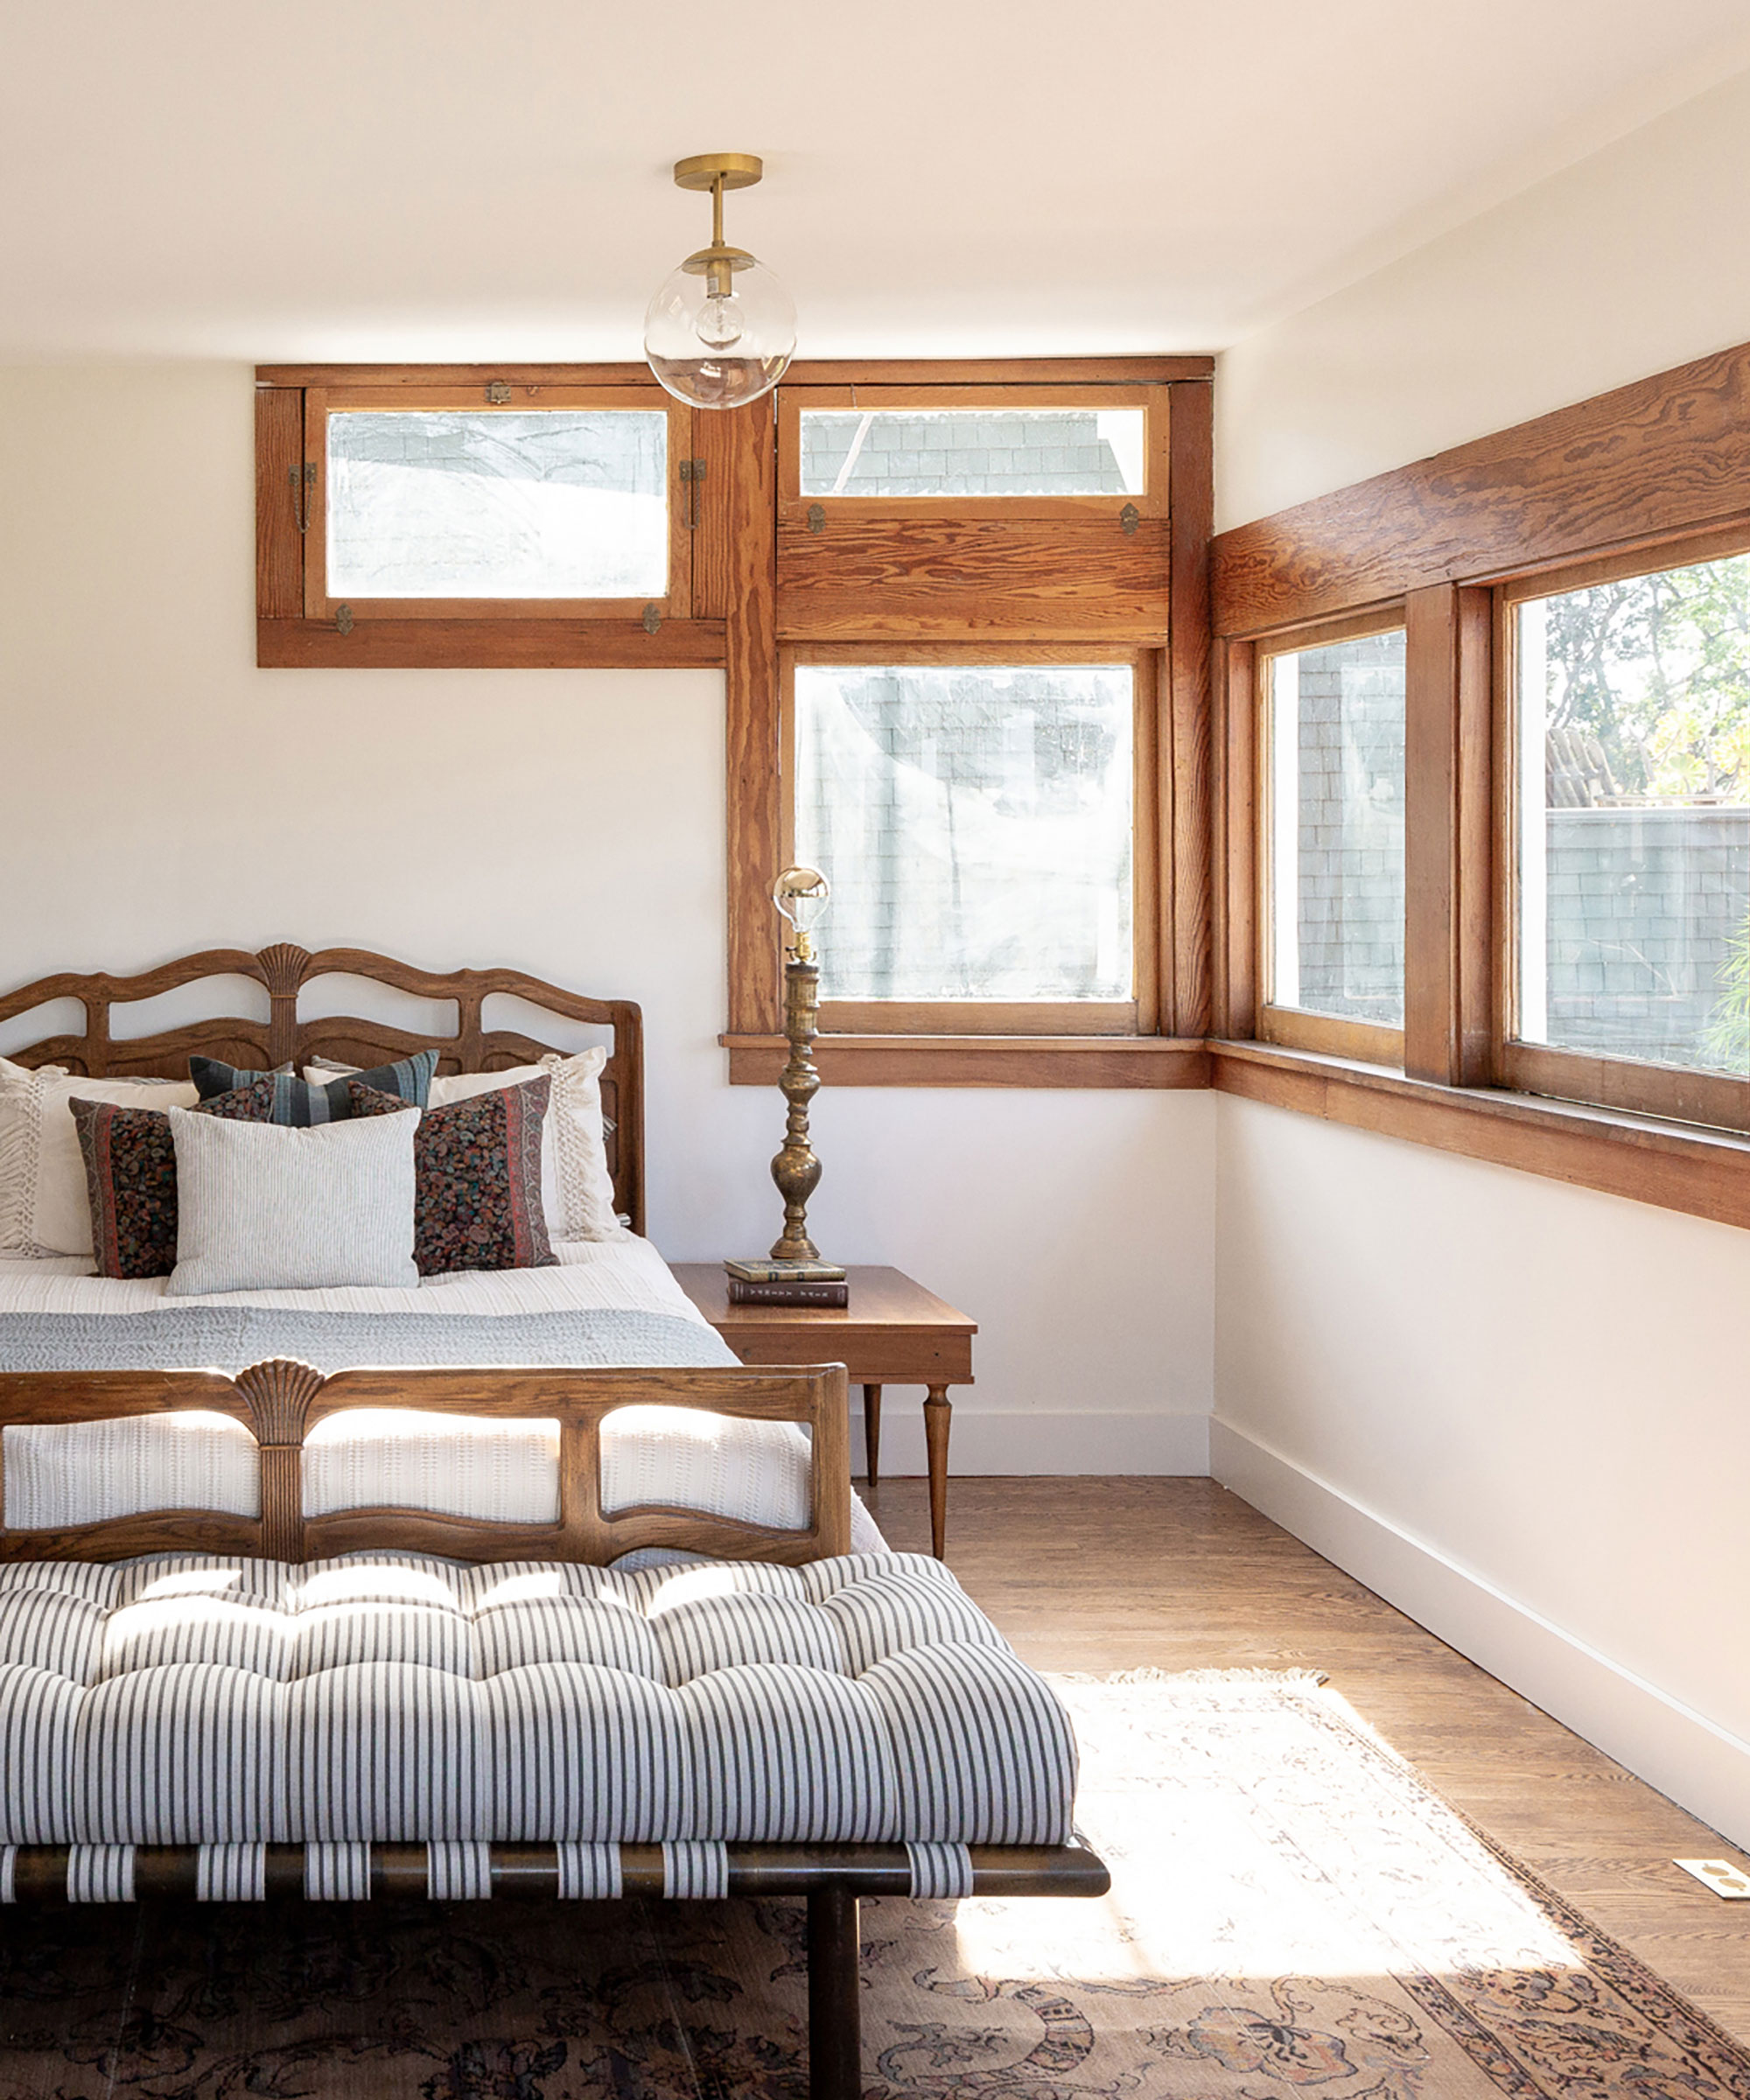 Dormitorio con marcos de ventanas tradicionales de madera, marco de cama de madera oscura con ropa de cama gris, banco y pie de cama